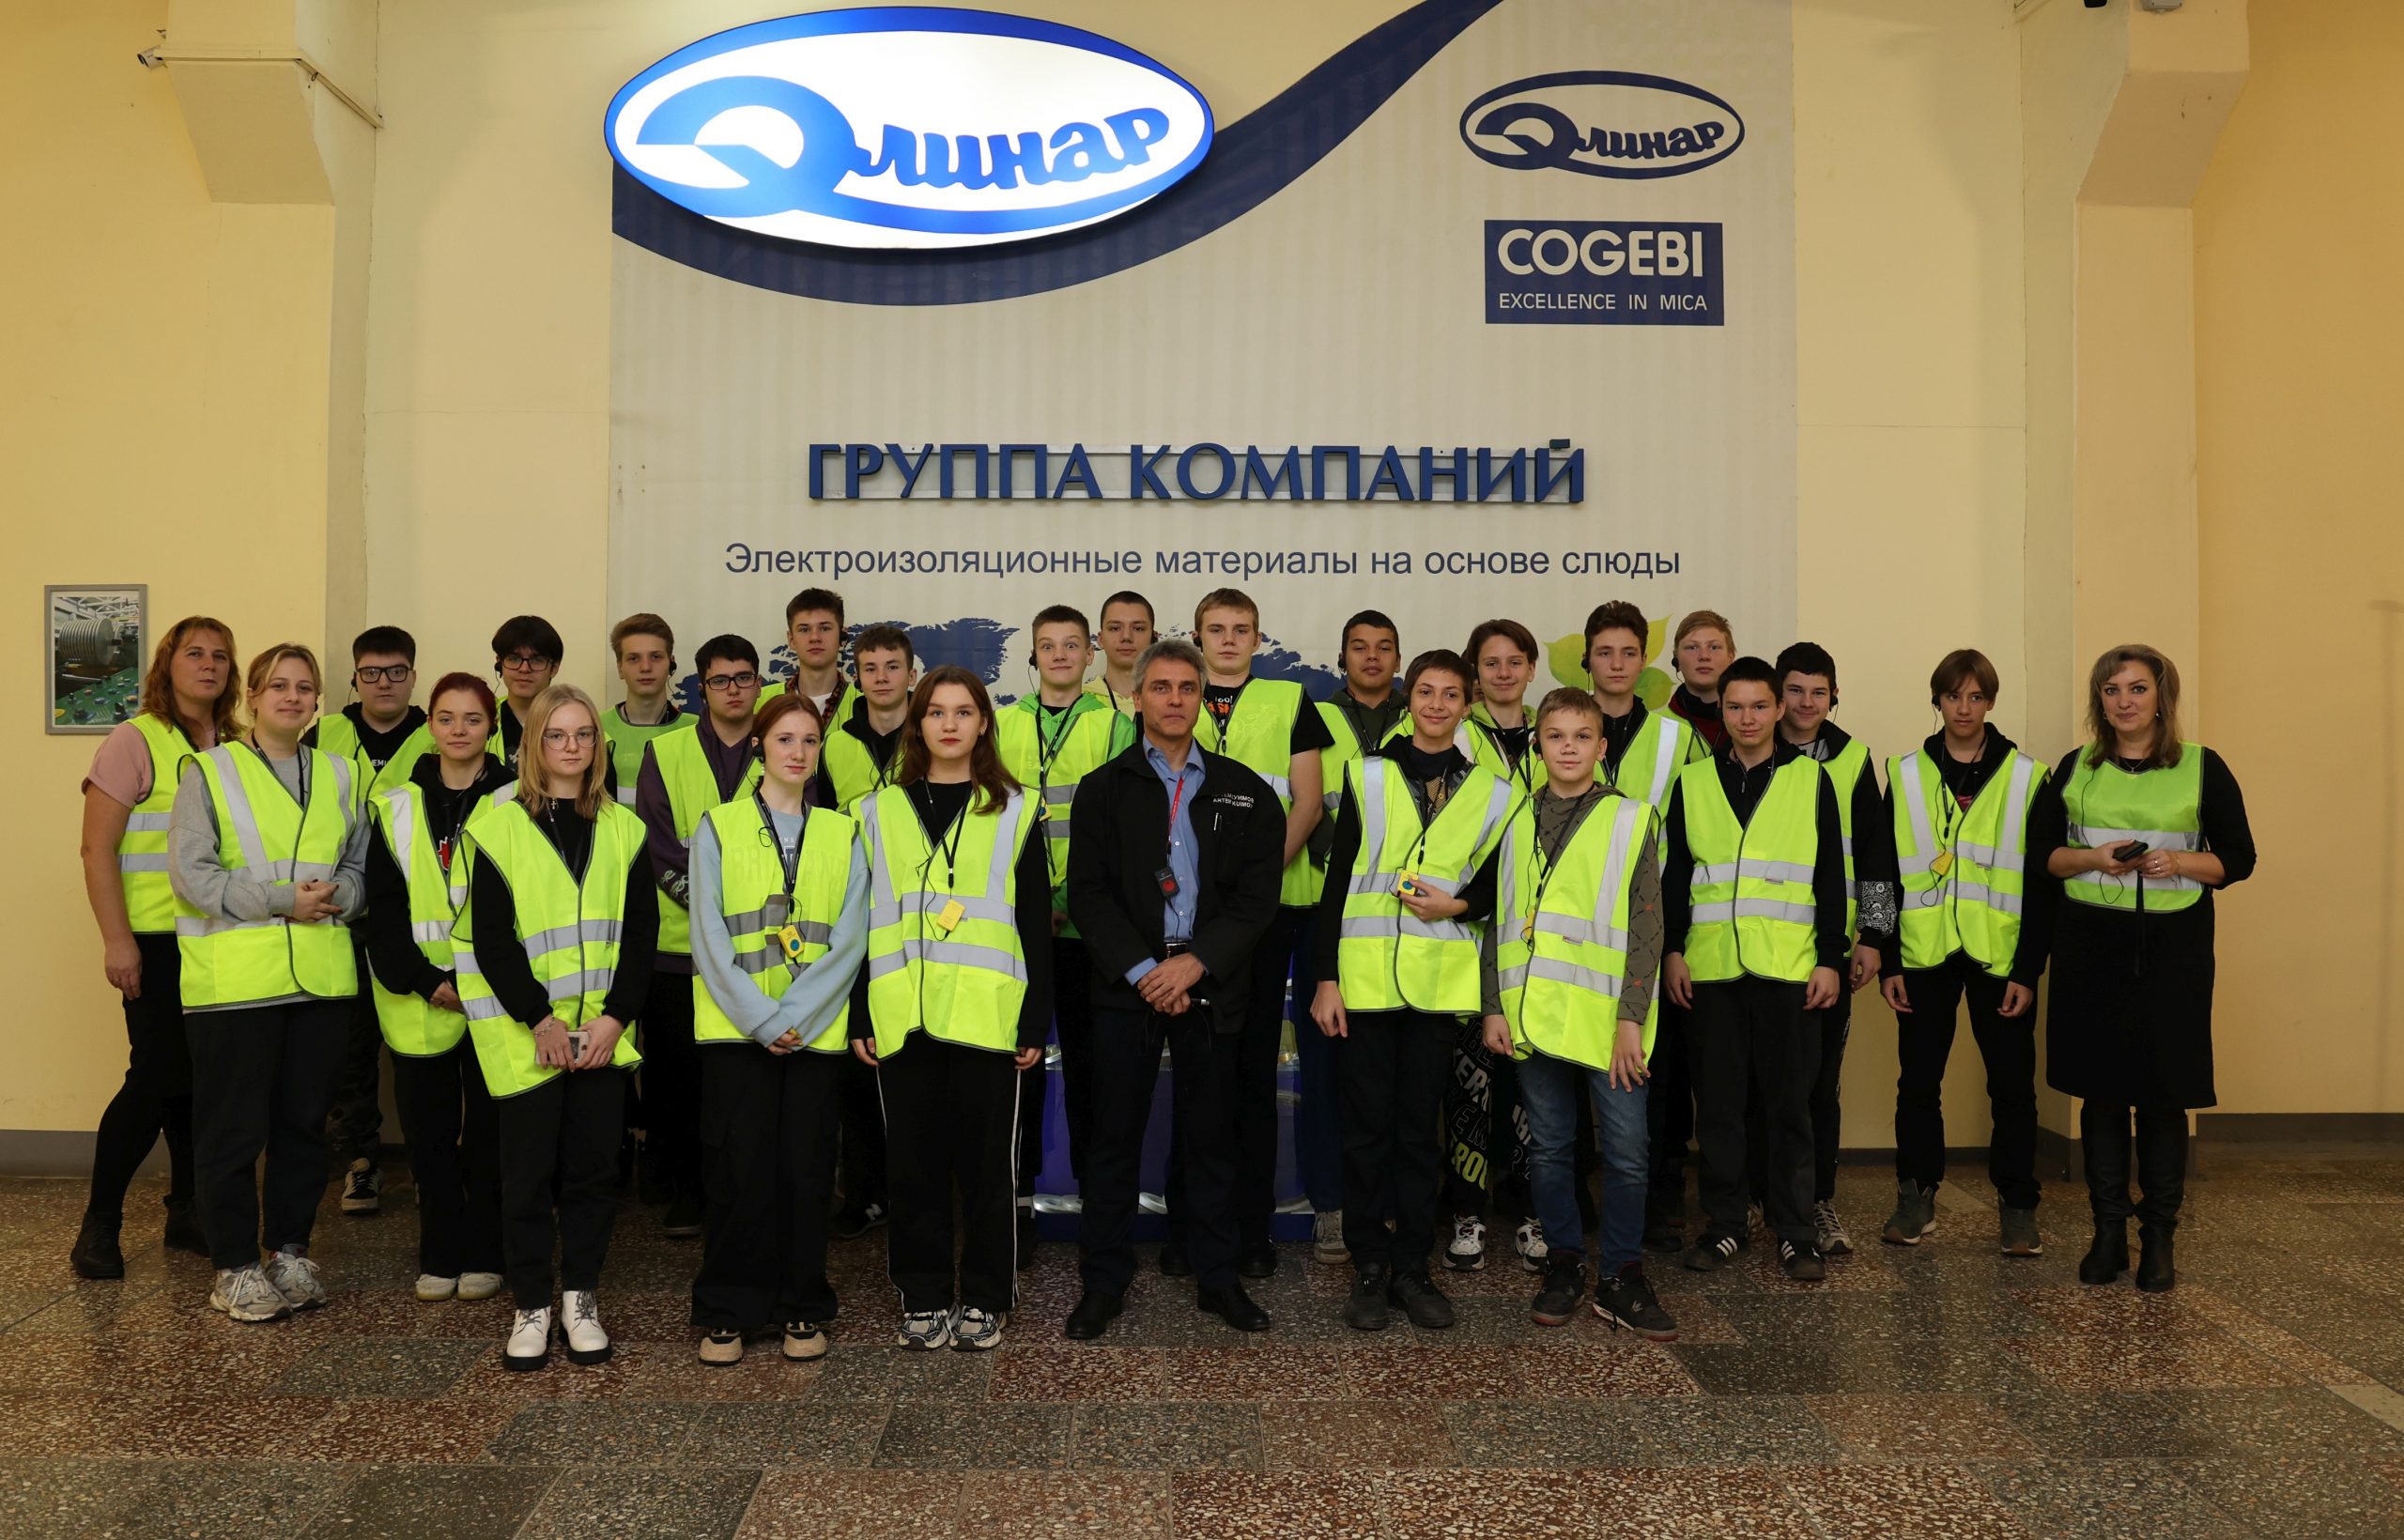 Завод электроизоляционных материалов «Элинар» посетили учащиеся МБОУ СОШ г.о. Молодежный